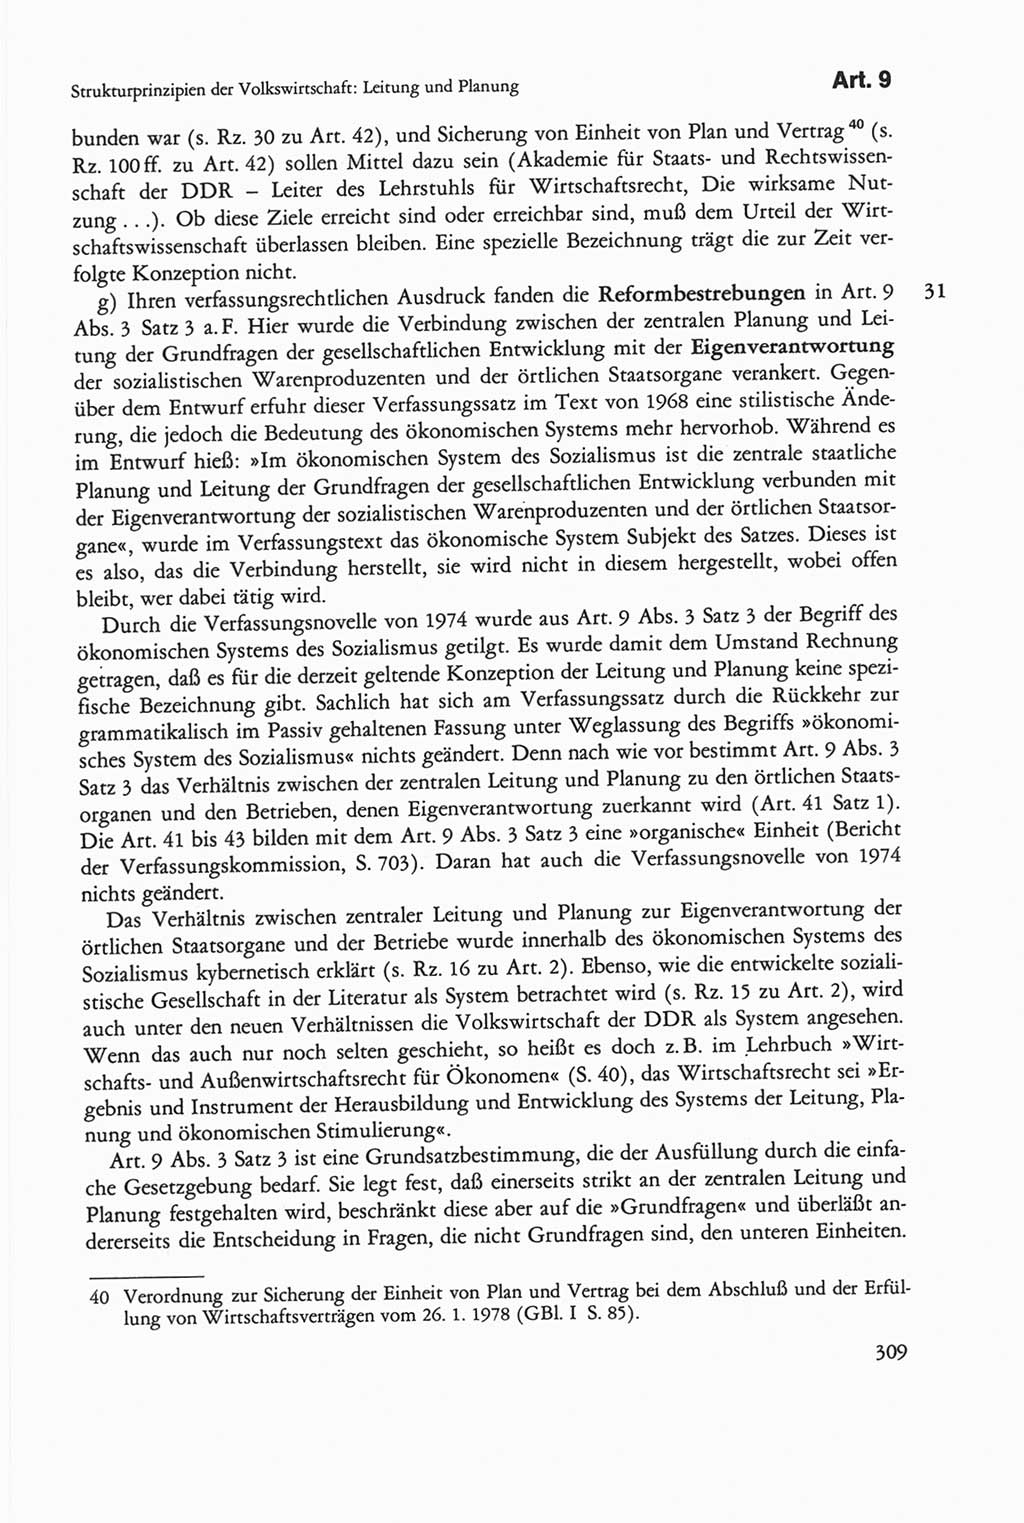 Die sozialistische Verfassung der Deutschen Demokratischen Republik (DDR), Kommentar mit einem Nachtrag 1997, Seite 309 (Soz. Verf. DDR Komm. Nachtr. 1997, S. 309)